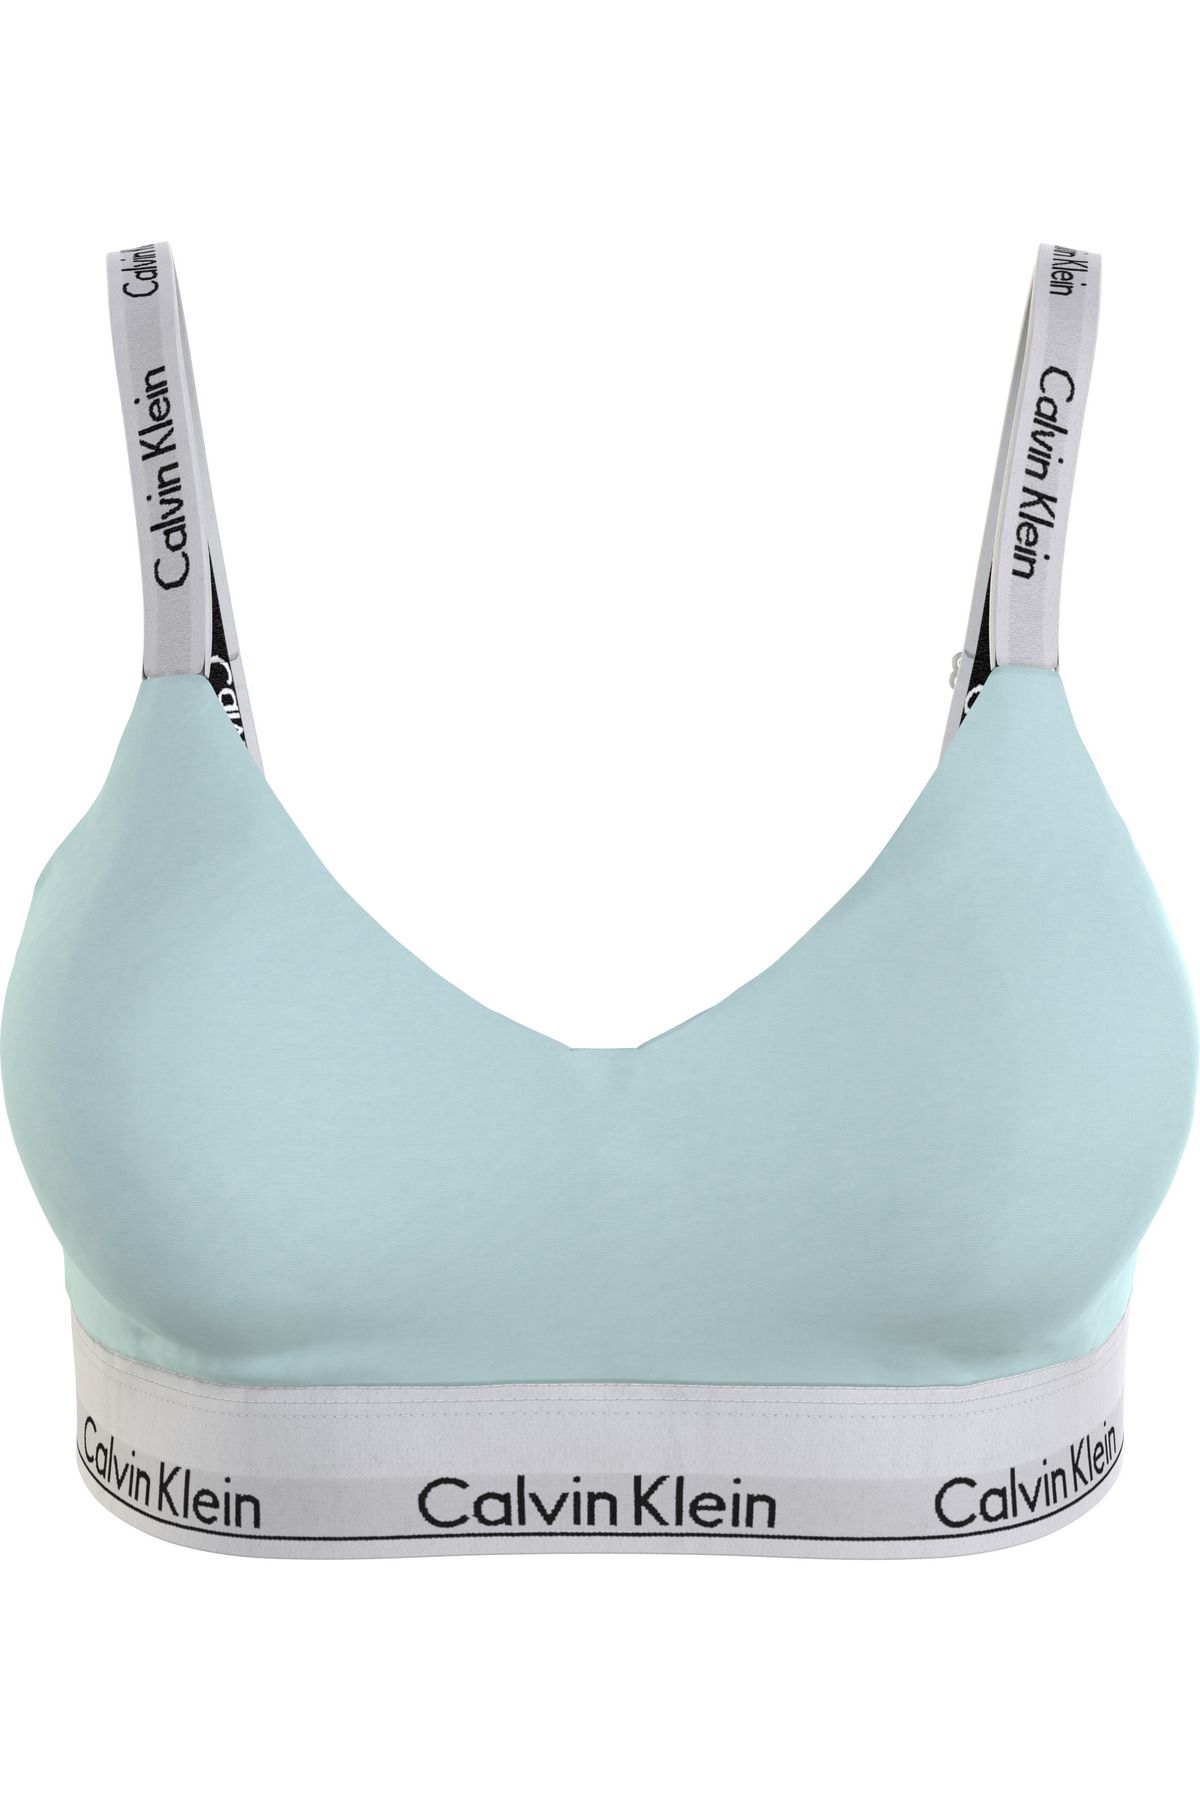 Calvin Klein Kadın Marka Logolu Elastik Bantlı Günlük Kullanıma Uygun Mavi Spor Sütyeni 000qf7059e-lkw